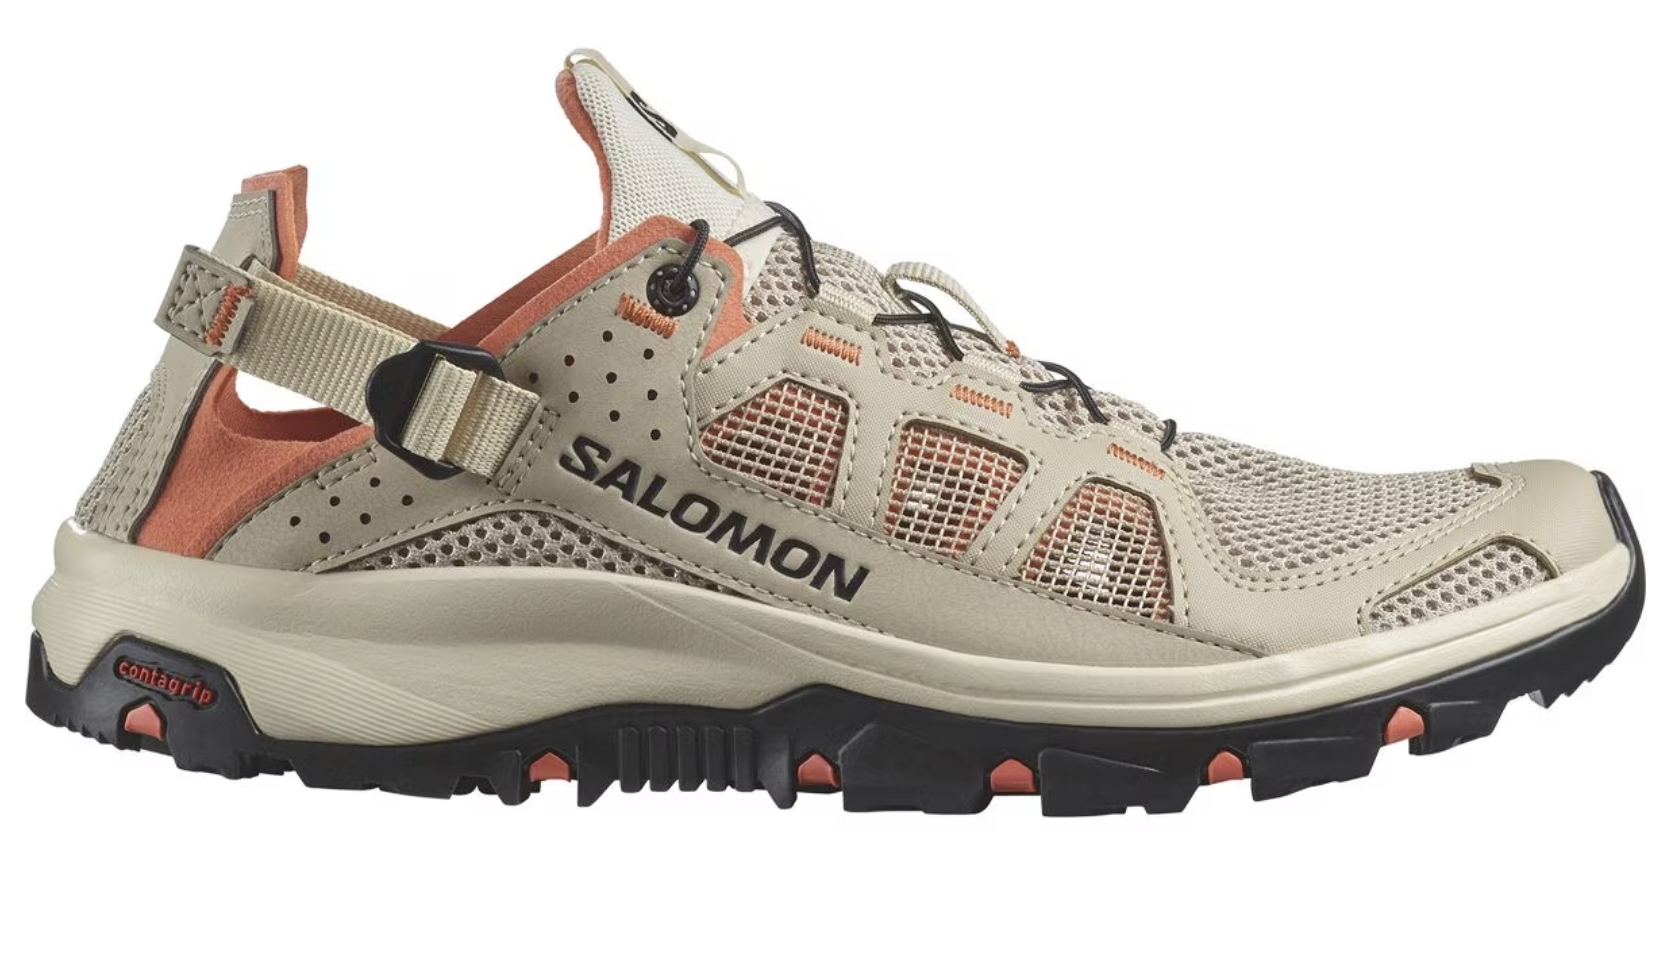 Salomon Techamphibian 5 Water Shoe